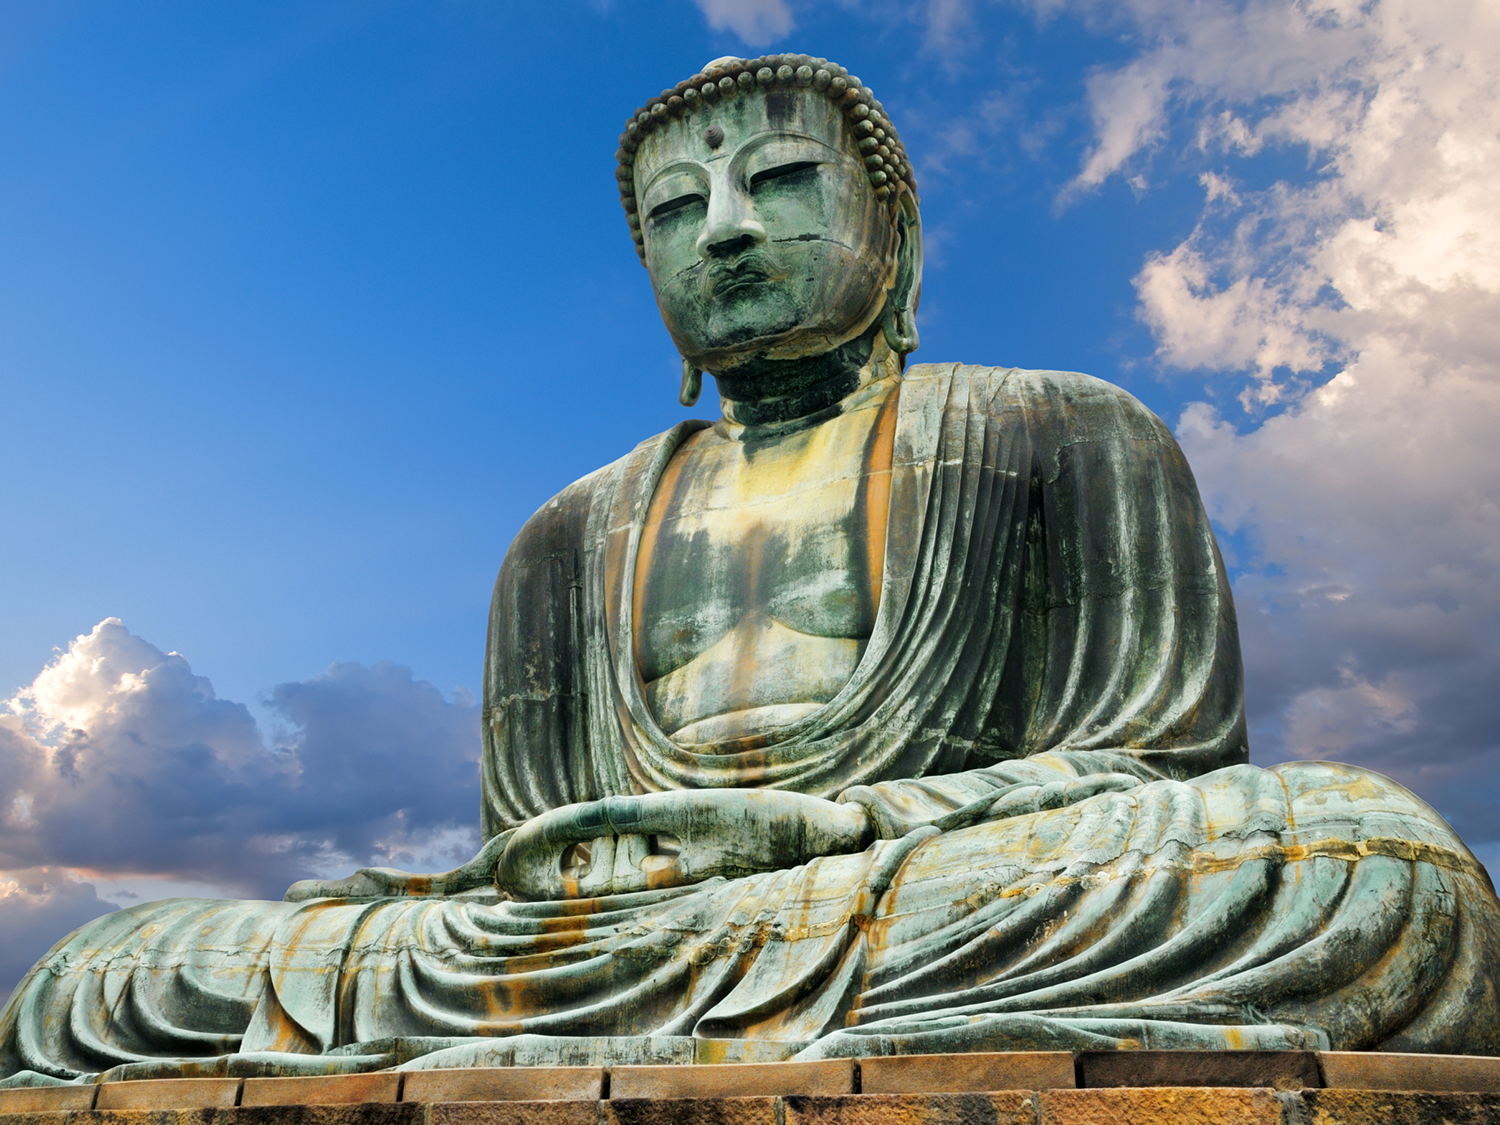 Day 3 - Kamakura - Big Buddha